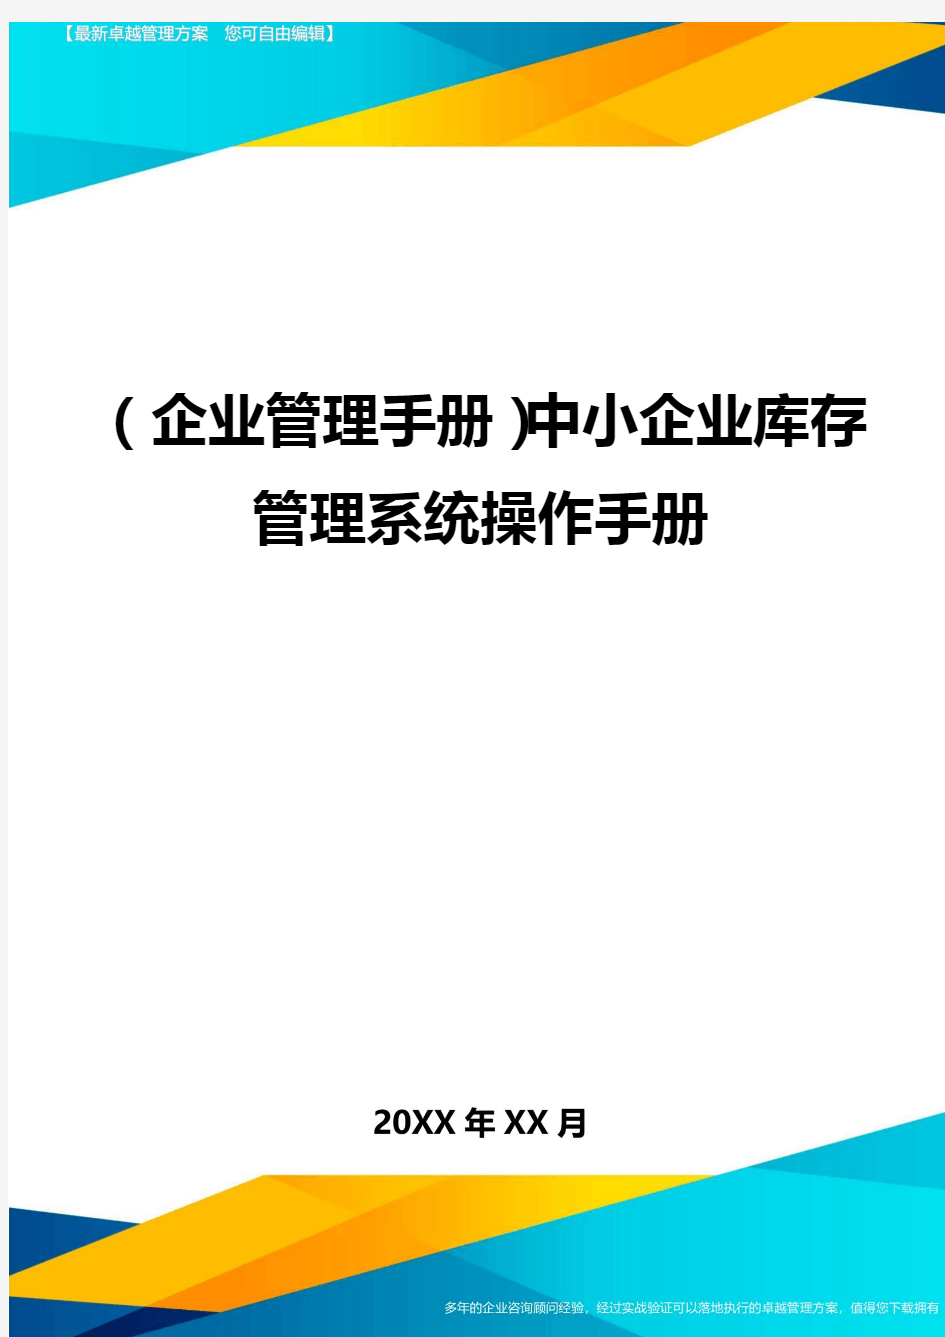 (企业管理手册)中小企业库存管理系统操作手册